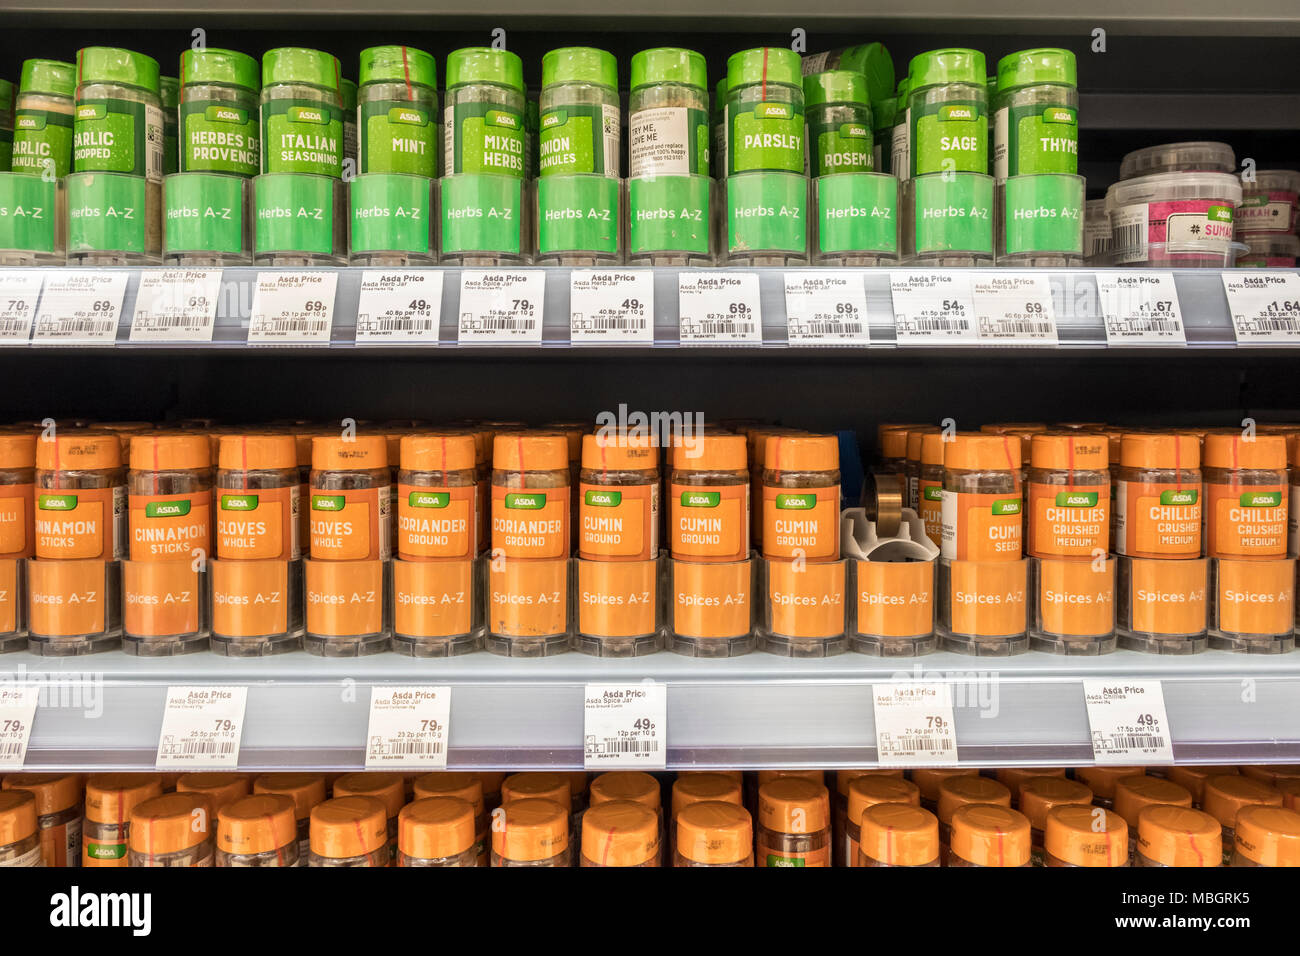 Gläser der eigenen Marke Kräuter und Gewürze in den Regalen der Supermärkte in Uk Supermarkt, Asda. Stockfoto